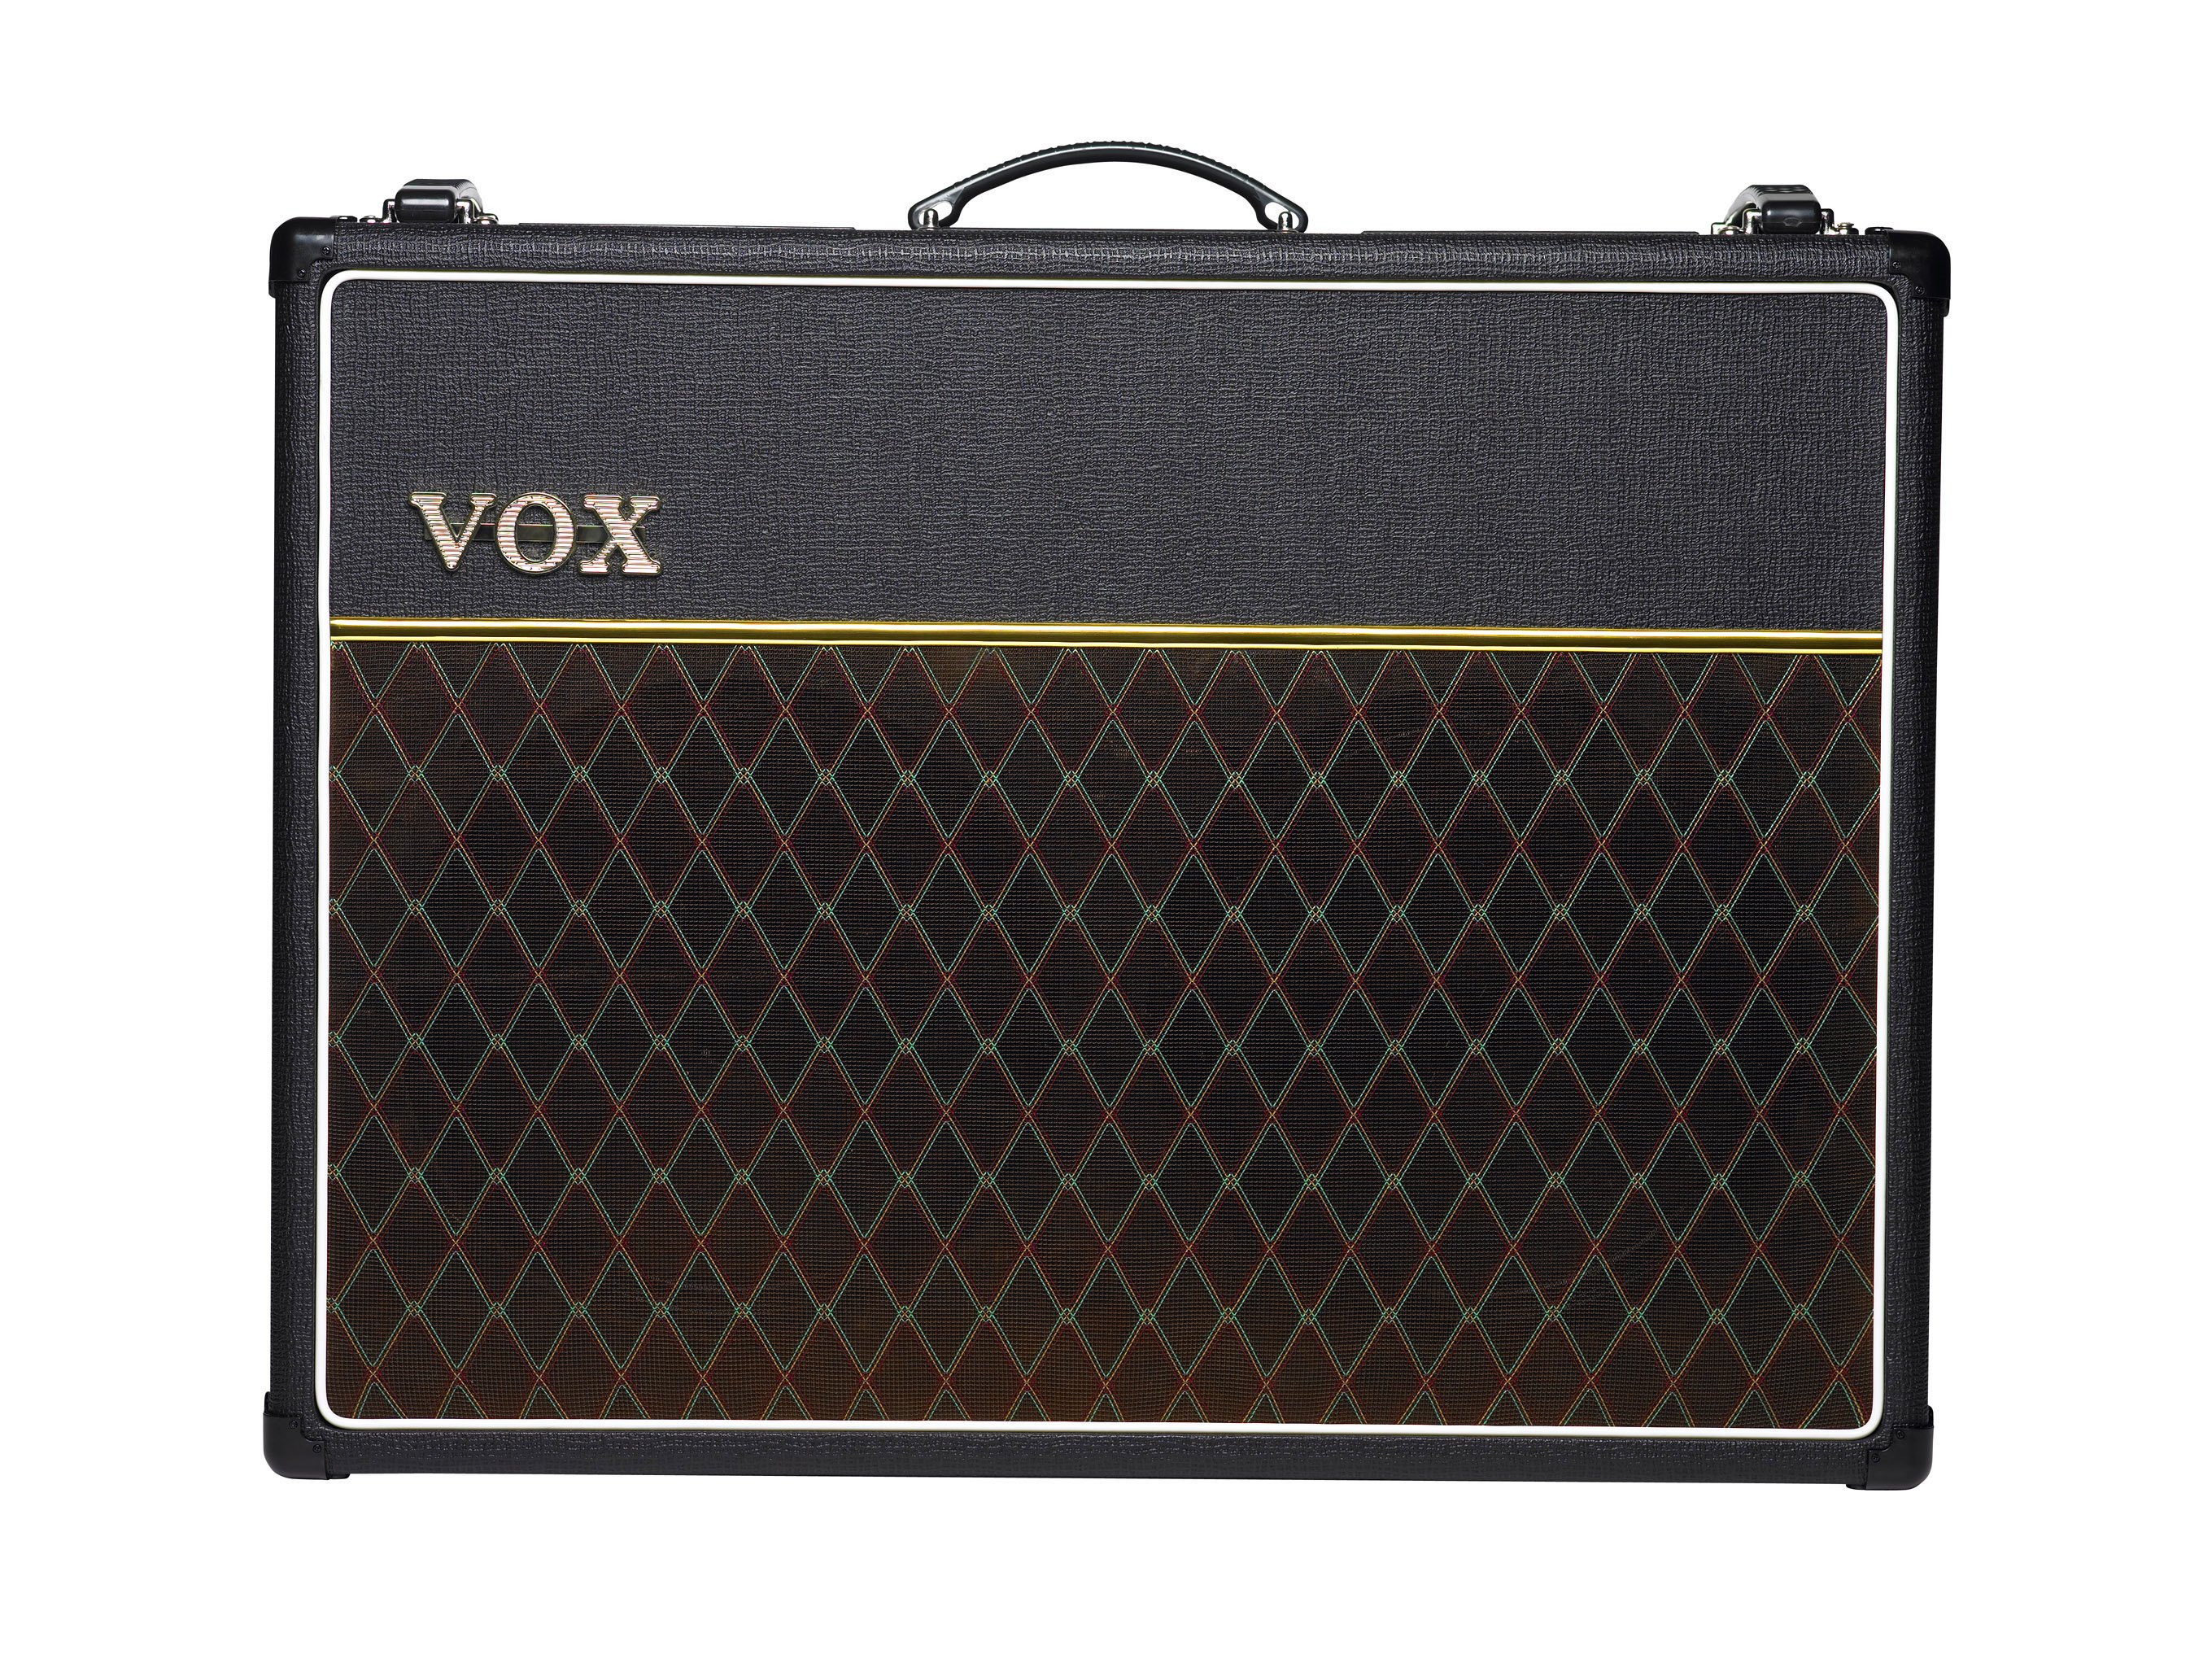 Vox Amplifier